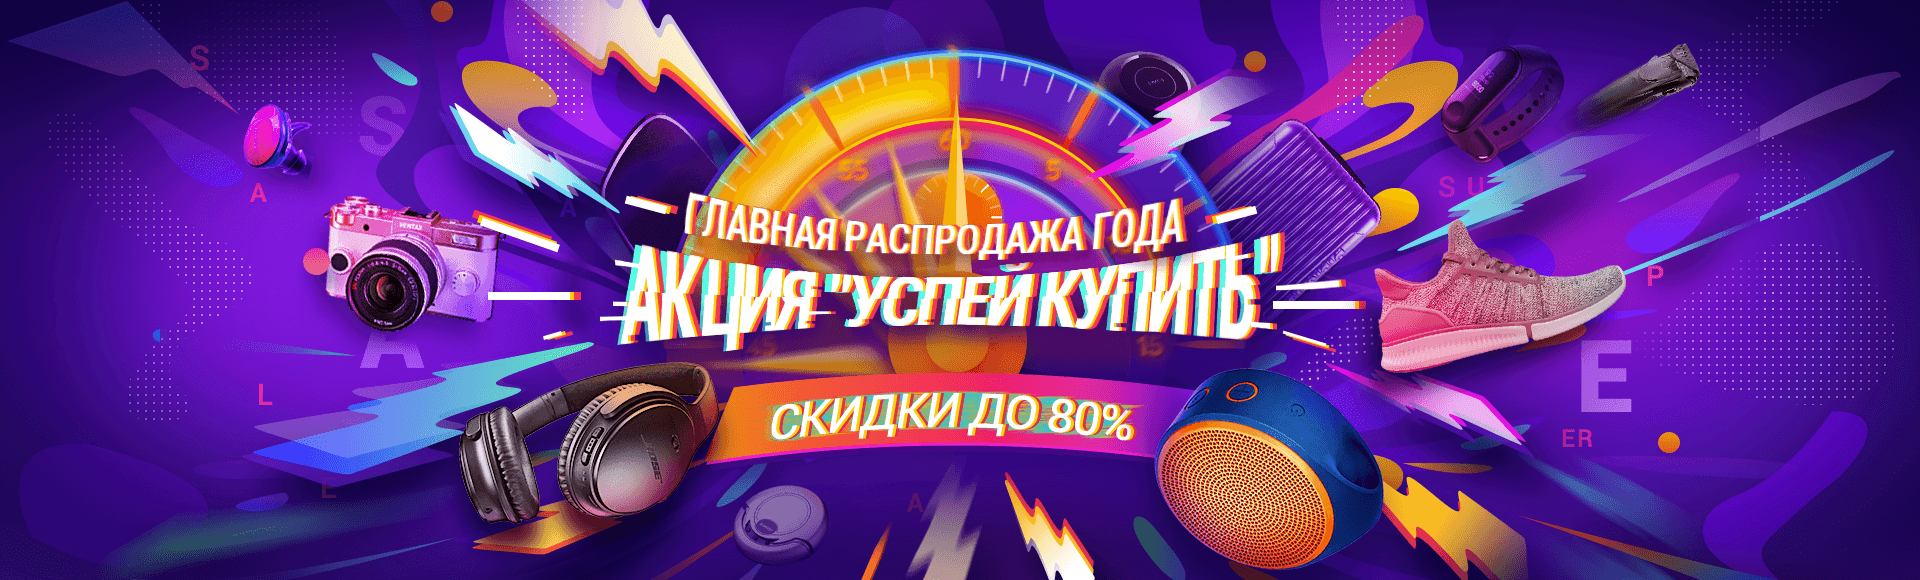 Рекламная акция www.jd.ru «Главная распродажа года»